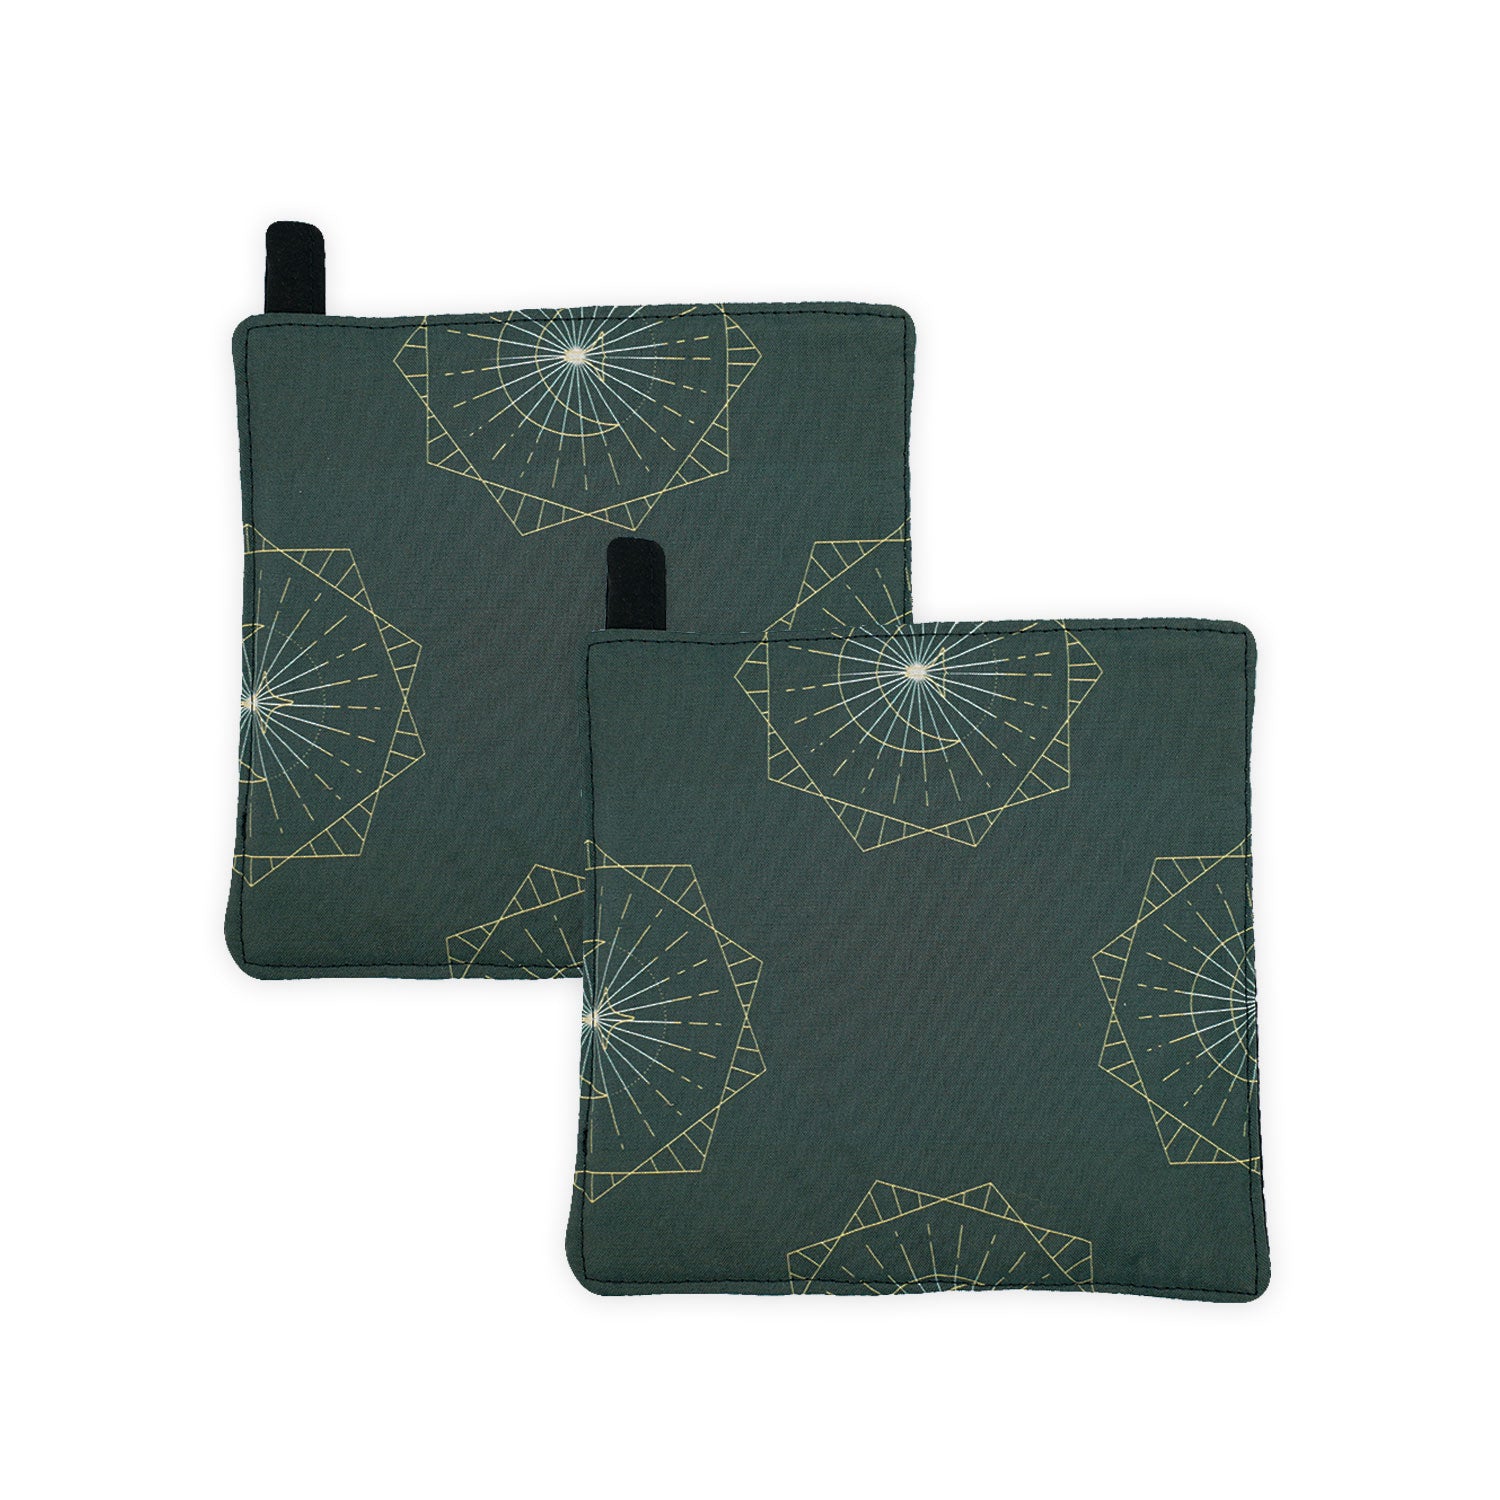 Handstitched Heat Resistant Potholder - Green Mau Hilo (2-pack)